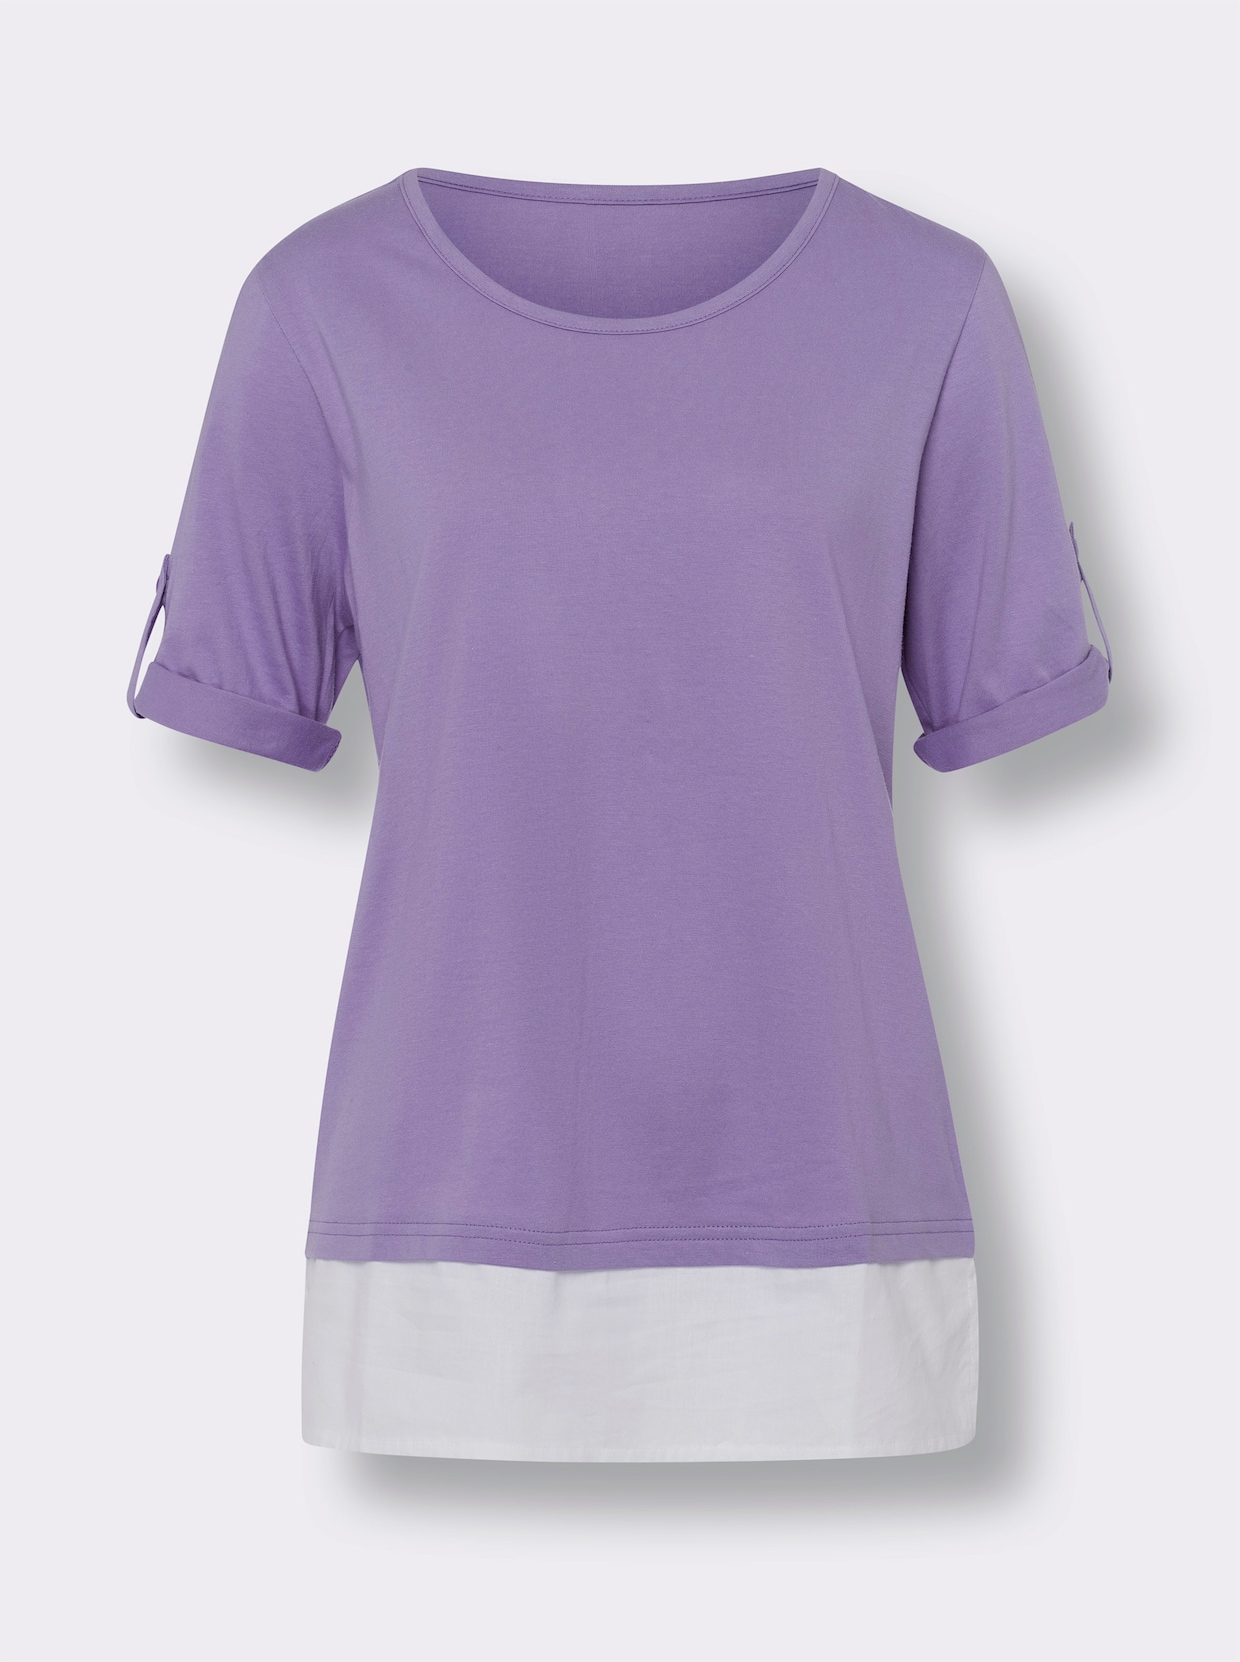 2-in-1-Shirt - lavendel-weiß